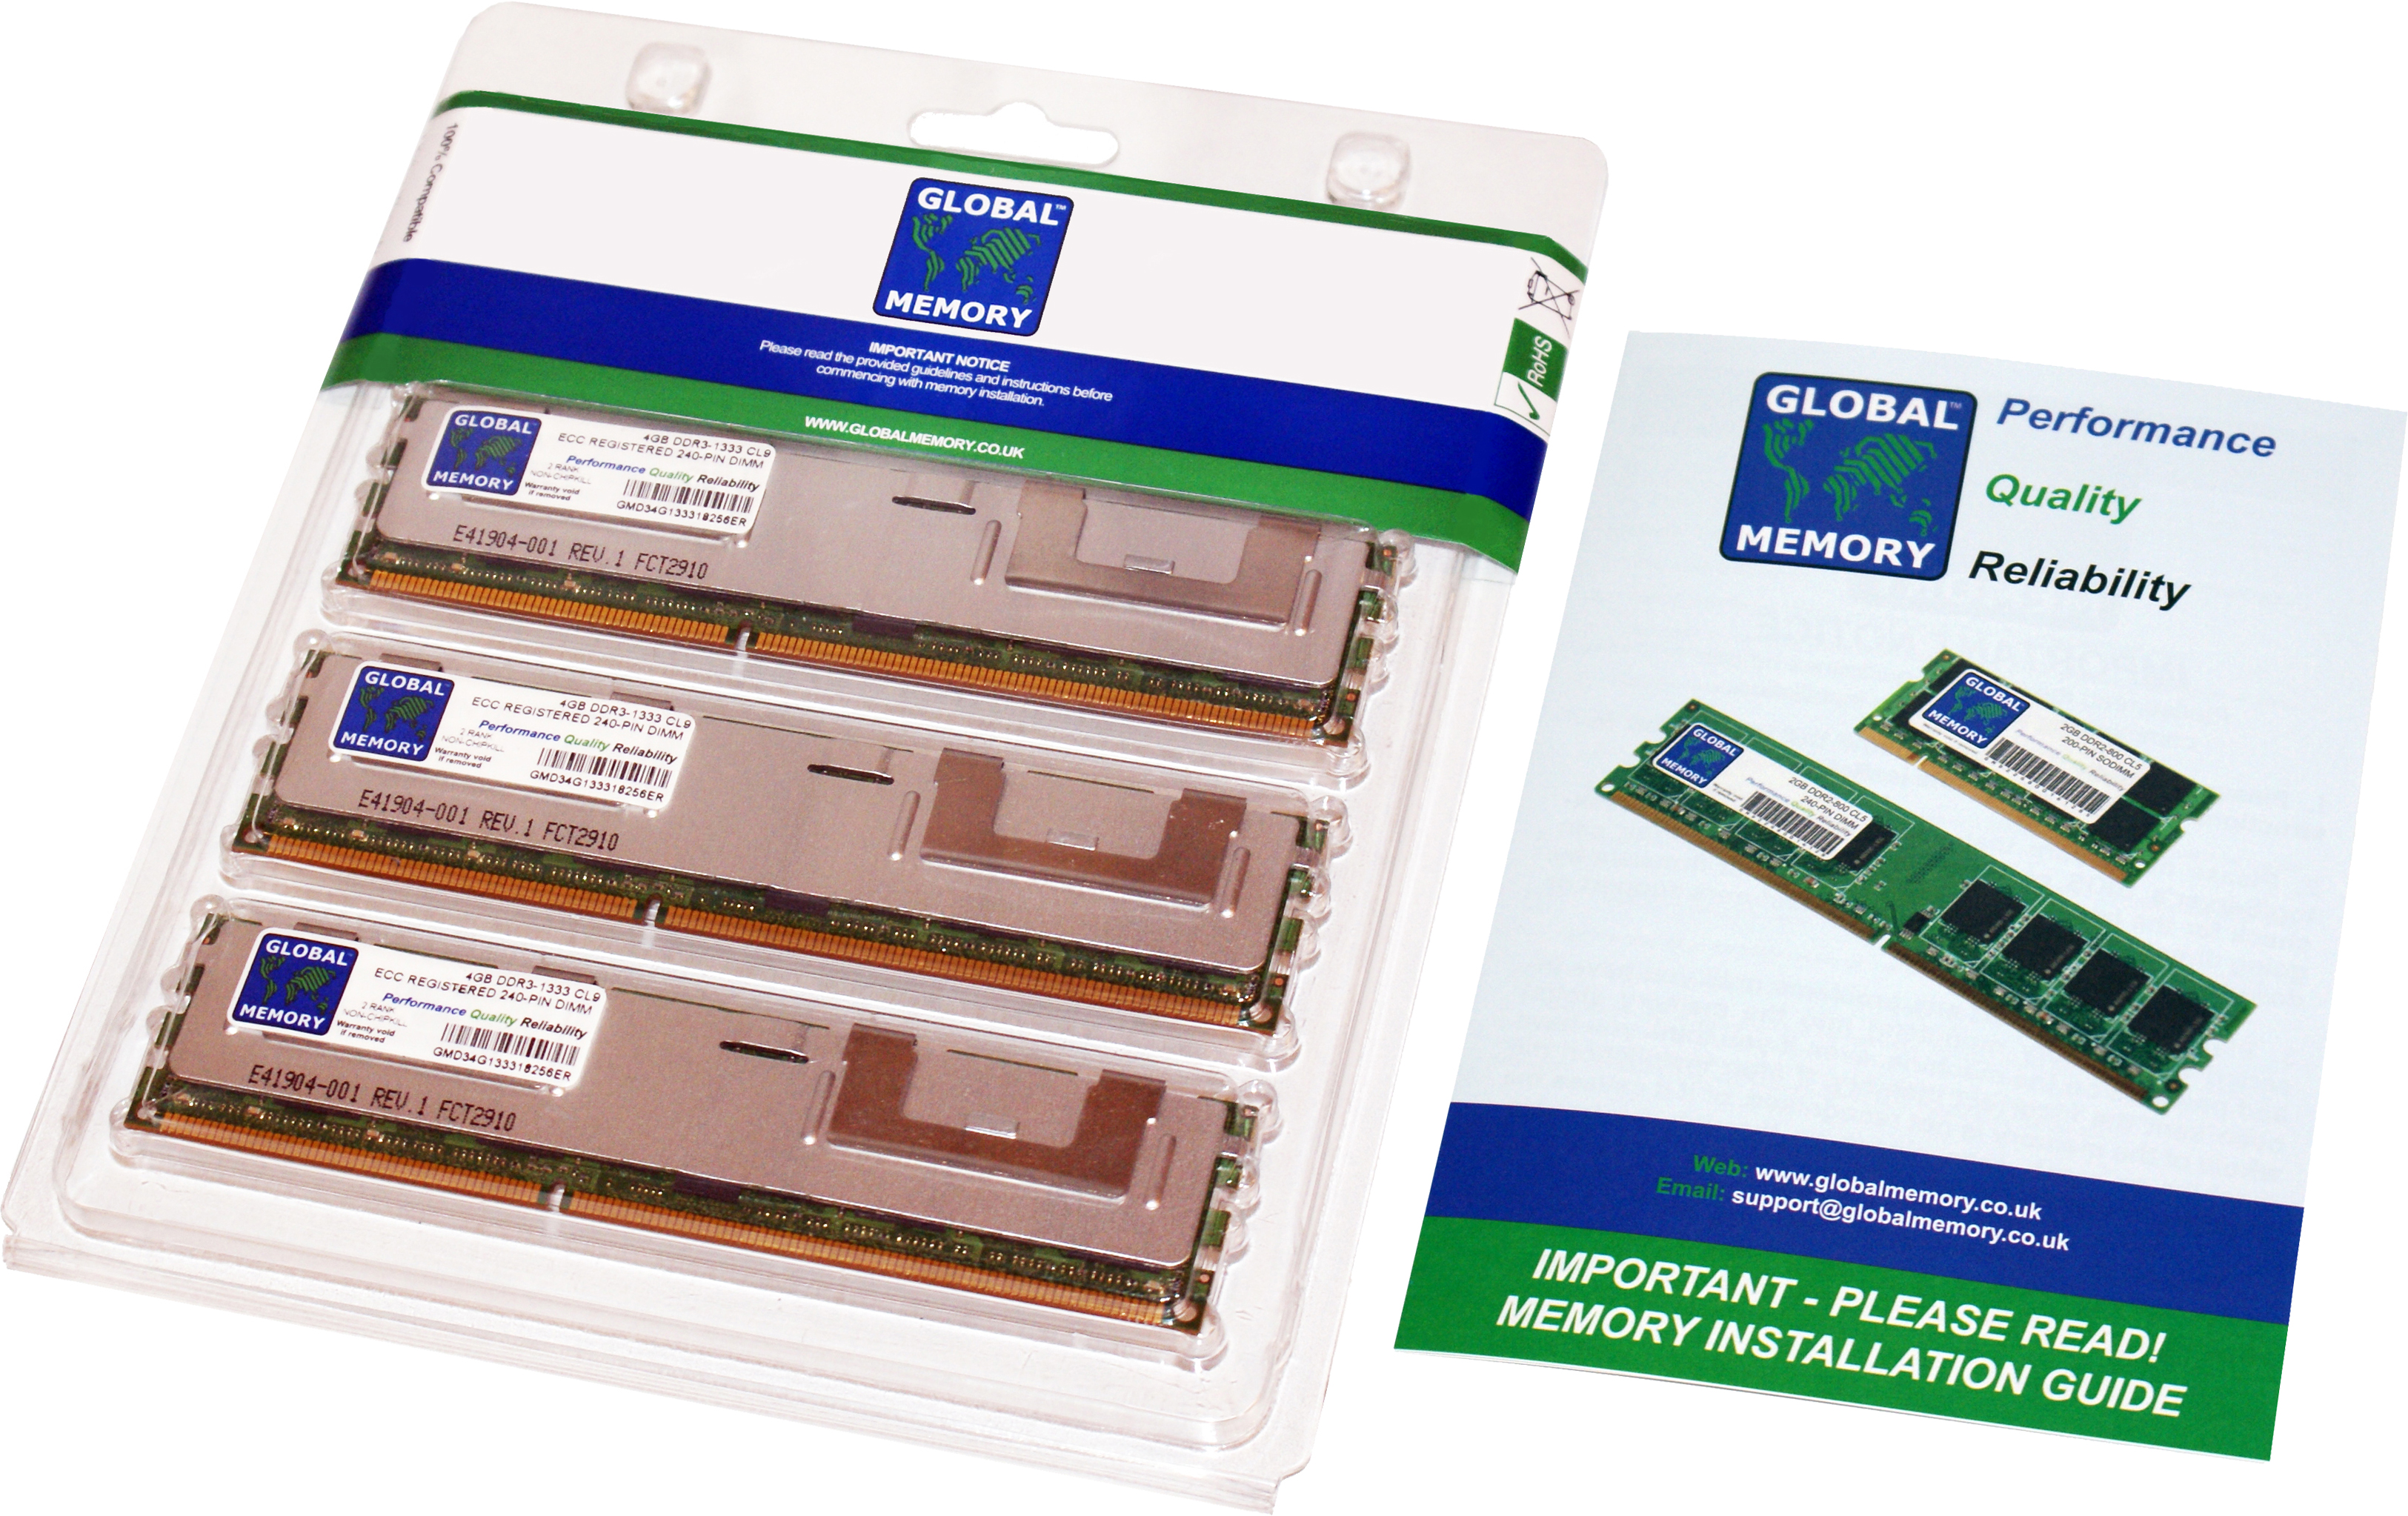 48GB (3 x 16GB) DDR3 1066MHz PC3-8500 240-PIN ECC REGISTERED DIMM (RDIMM) MEMORY RAM KIT FOR APPLE MAC PRO (2009 - MID 2010 - MID 2012)